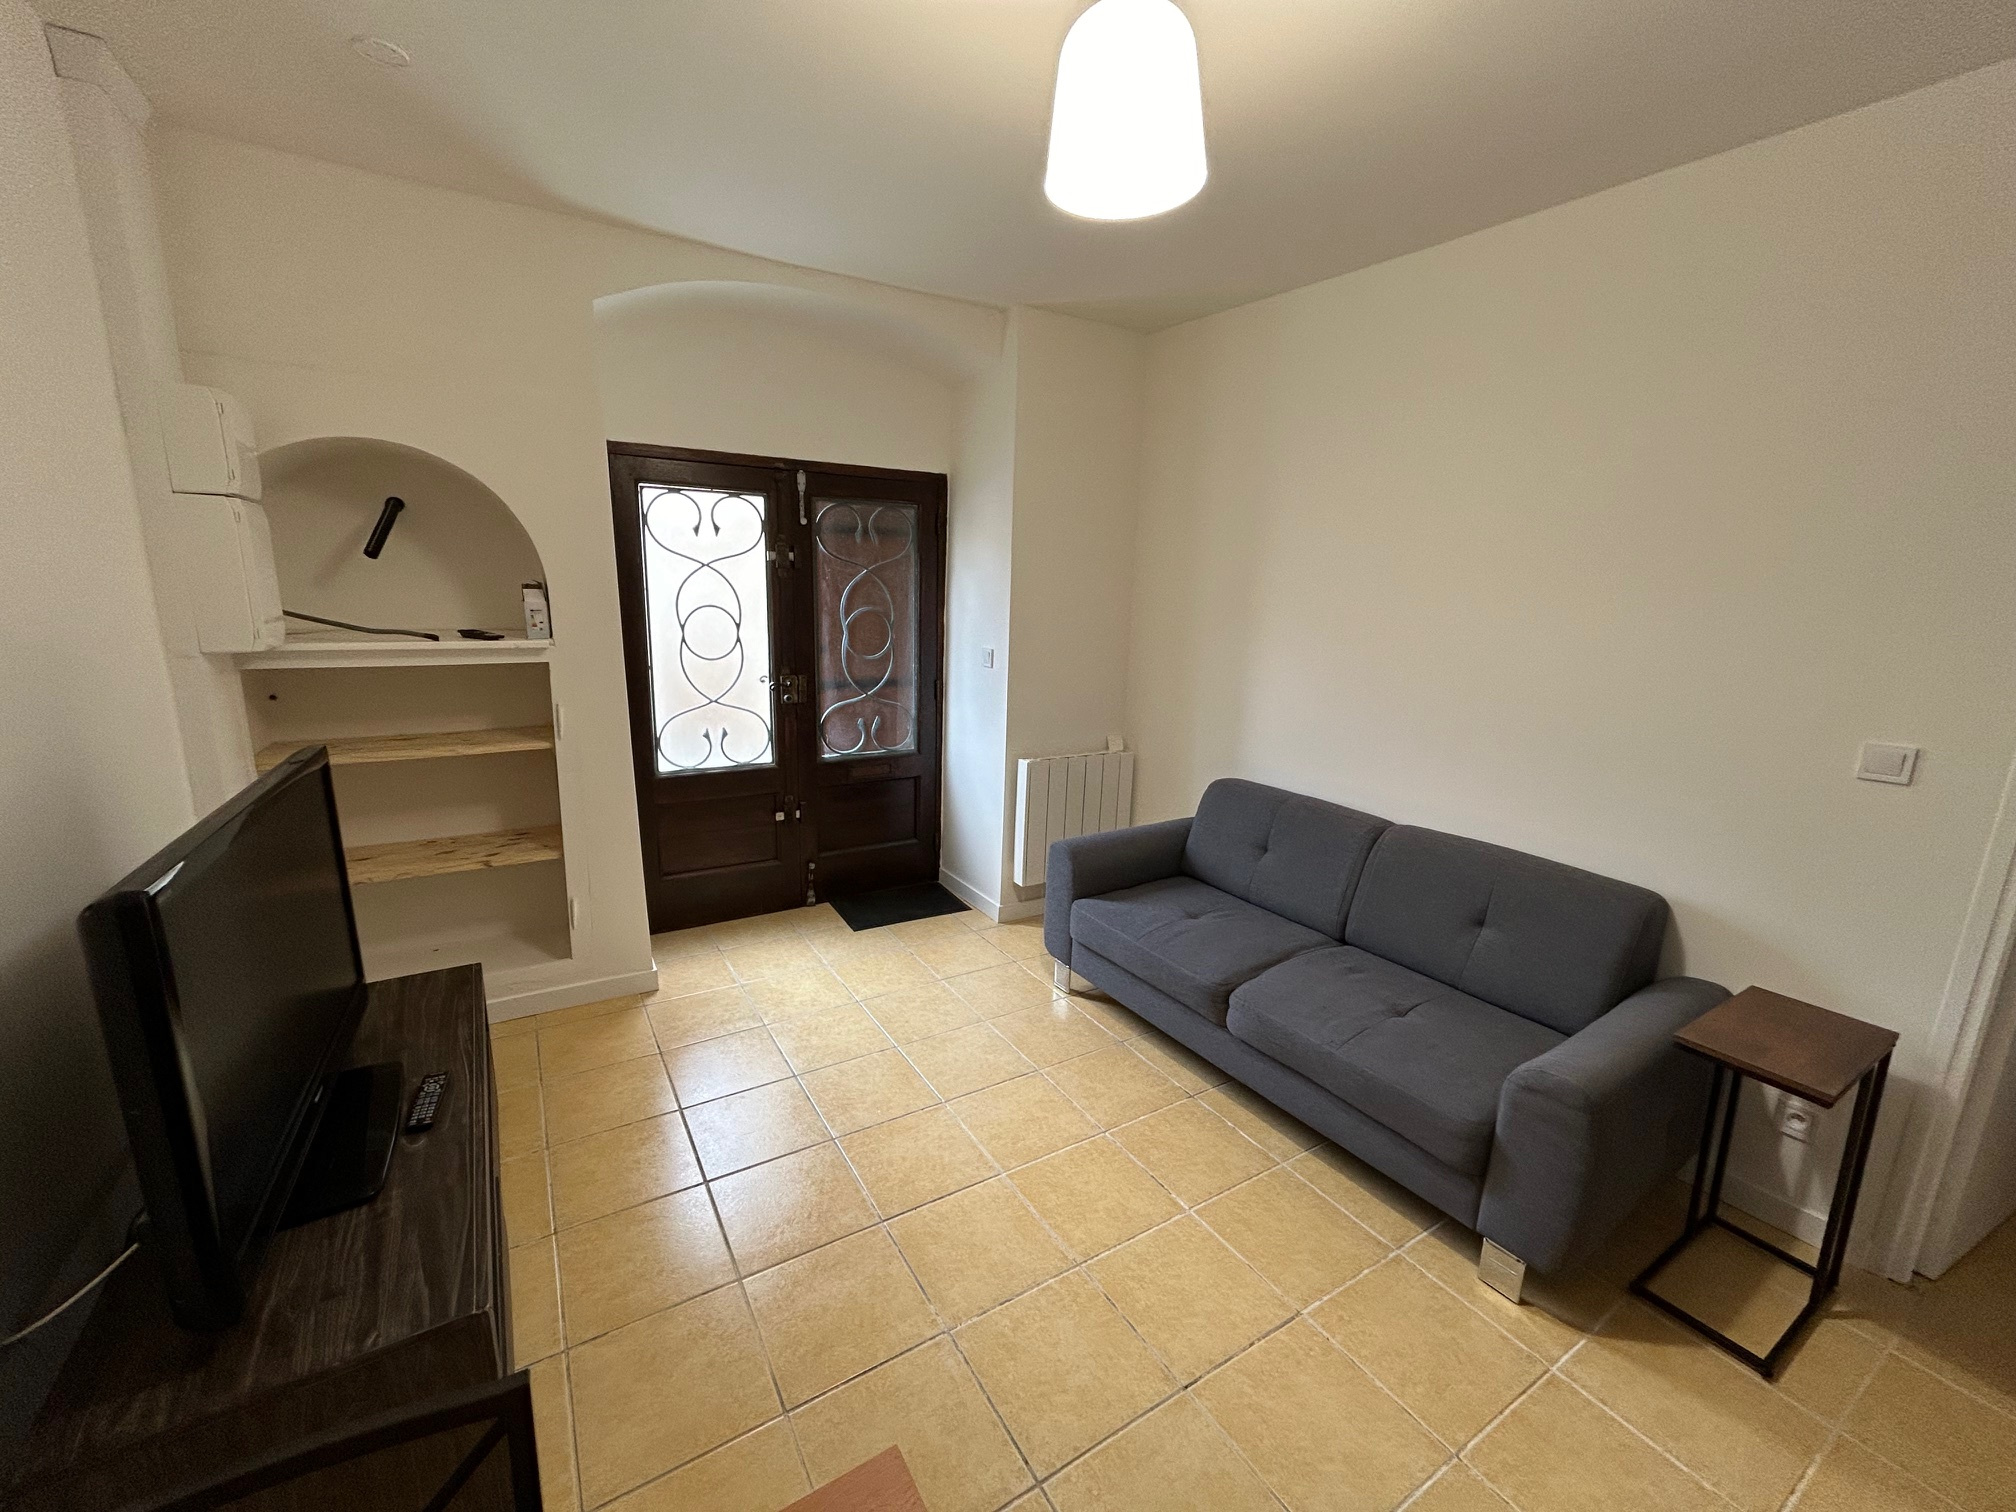 Appartement Appartement Lézignan-Corbières 420€ Grimois Immobilier